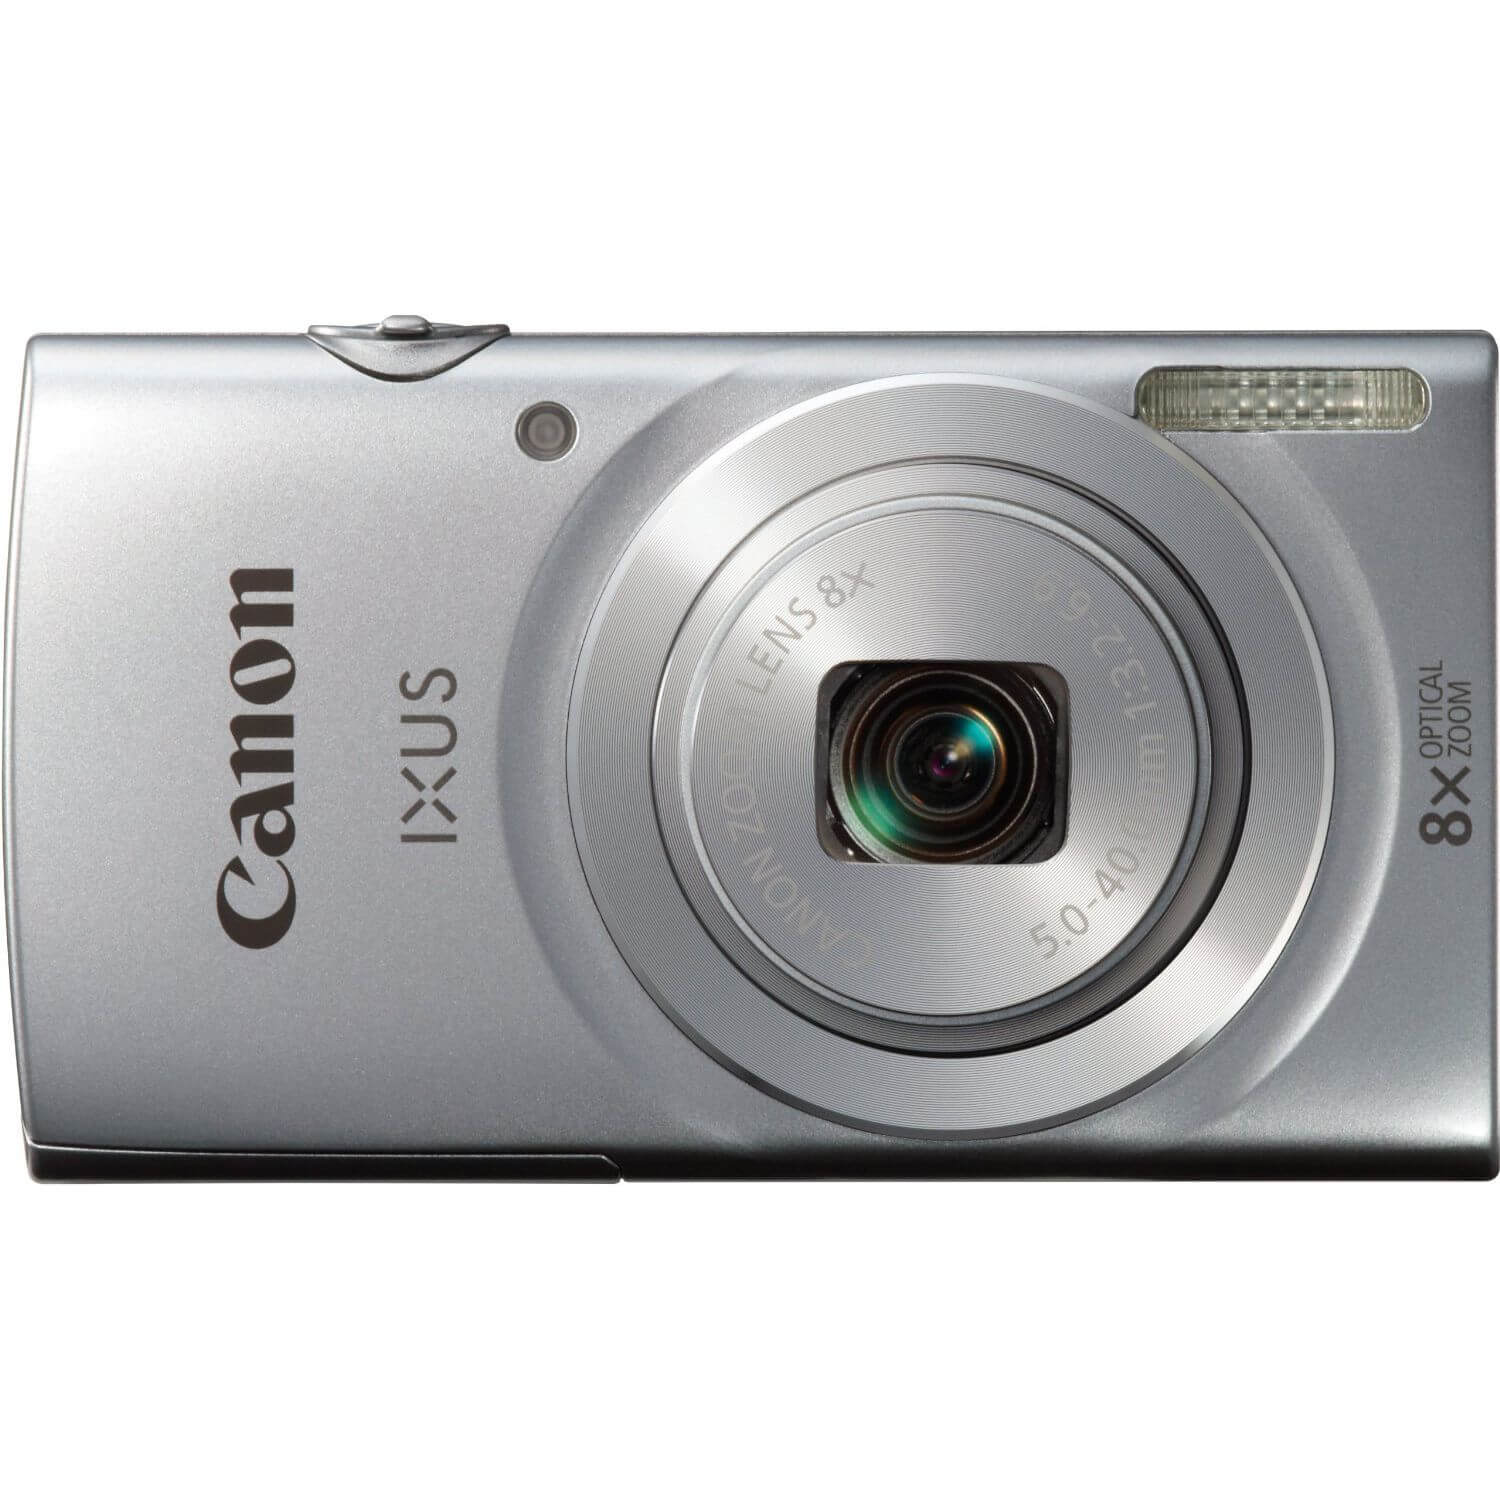  Aparat foto digital Canon Ixus 175, 20.1 MP, Argintiu 